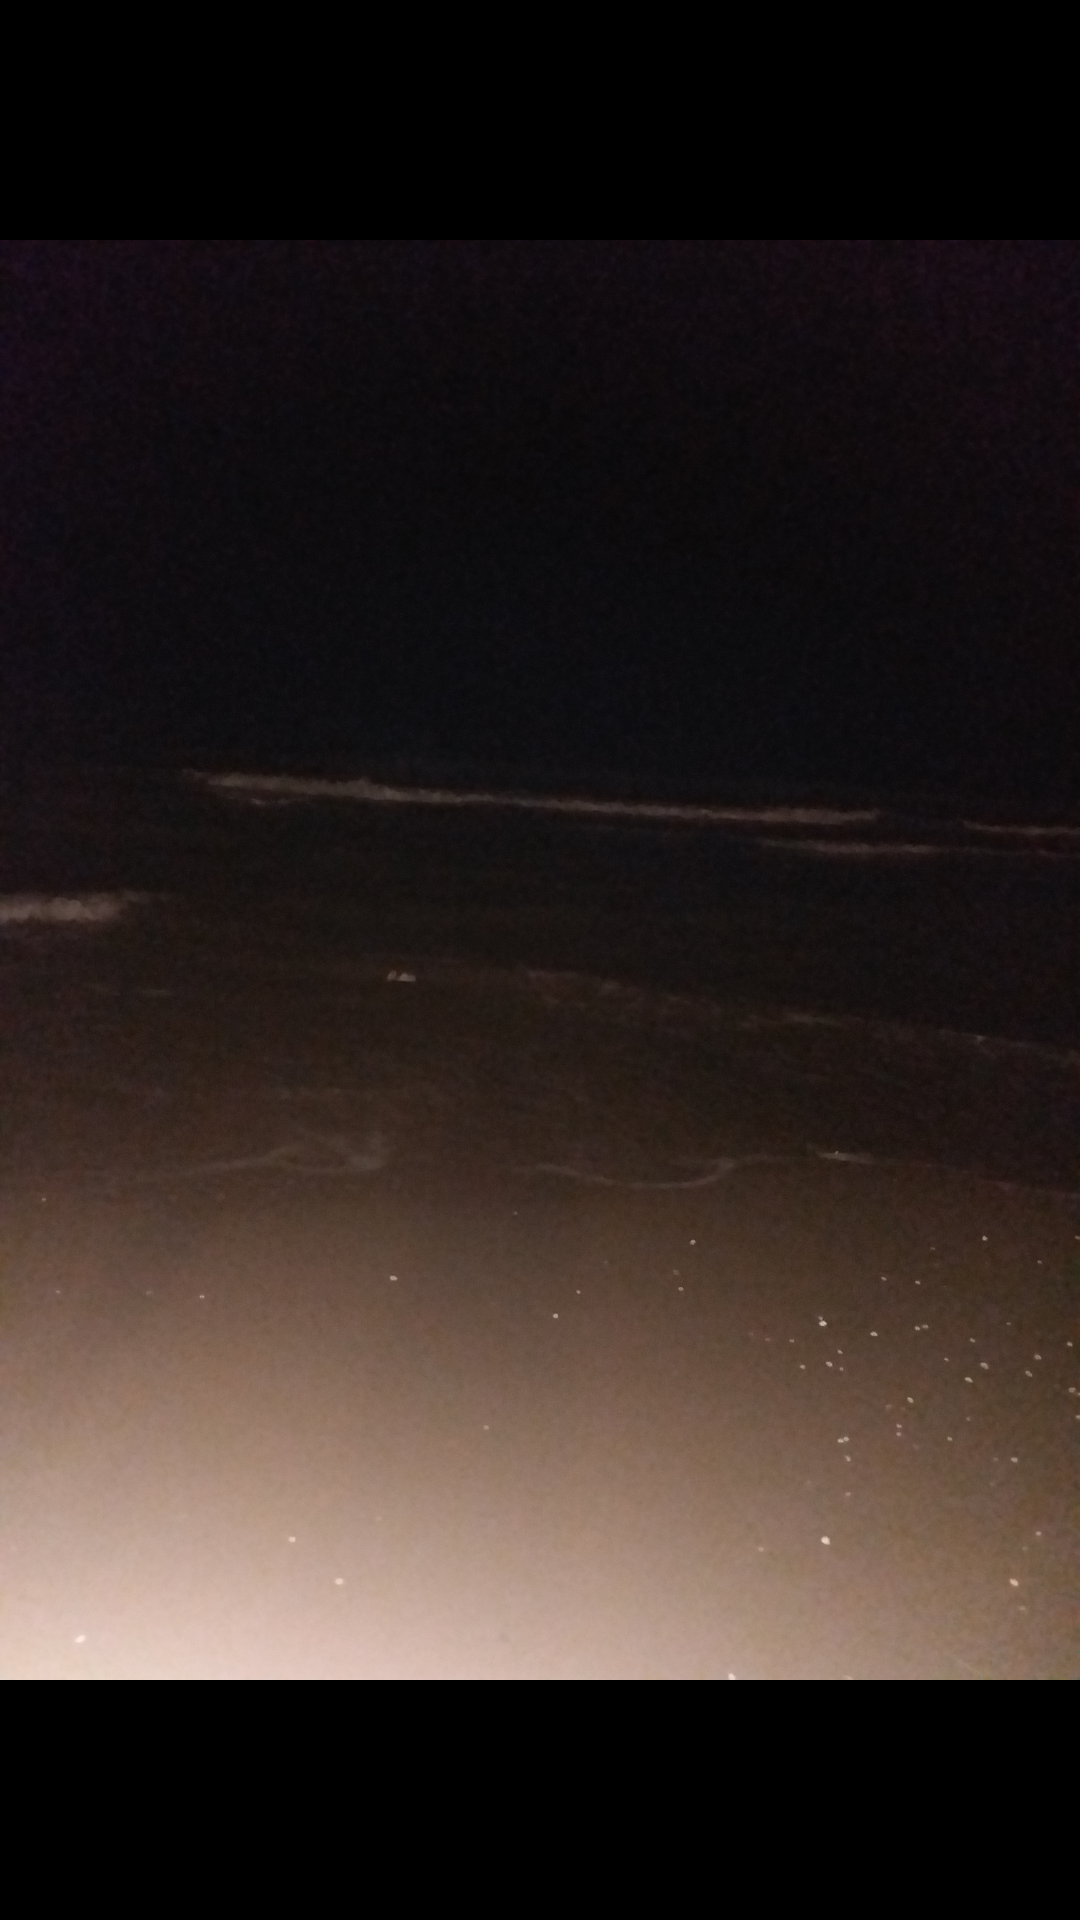 عکس دریا تو شب